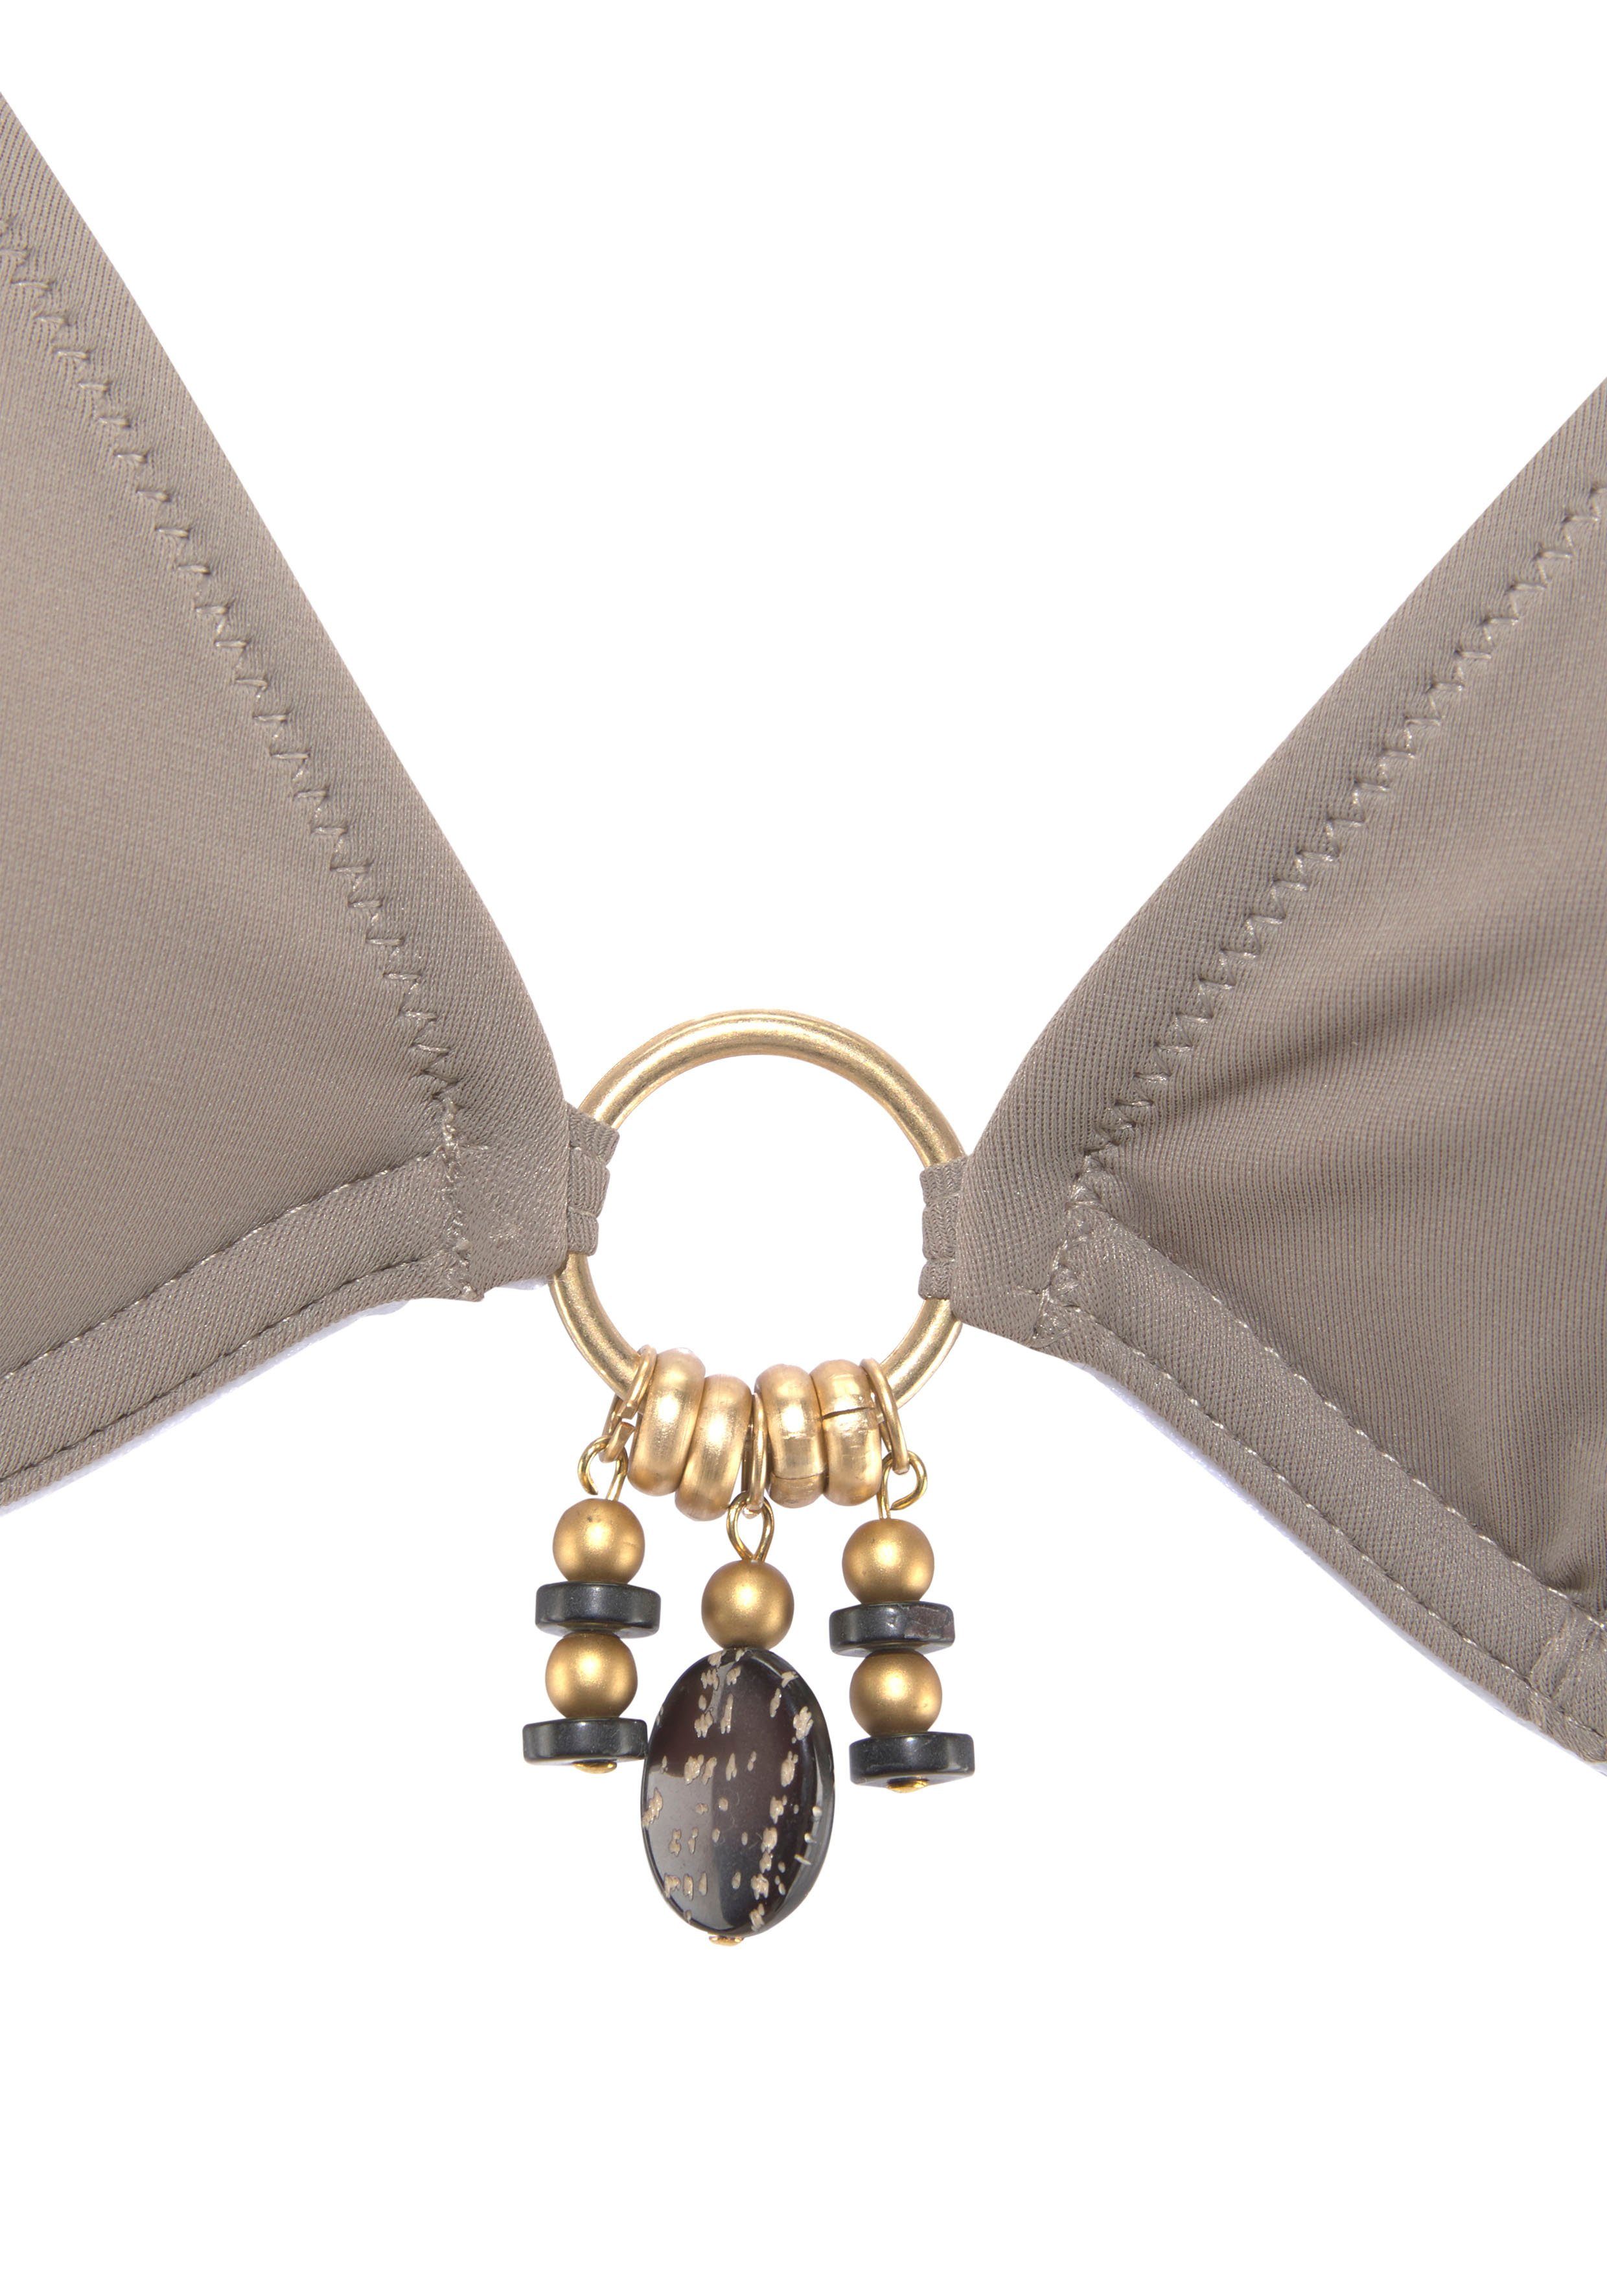 Accessories mit Bügel-Bikini Bruno gold-schwarzenen stein Banani